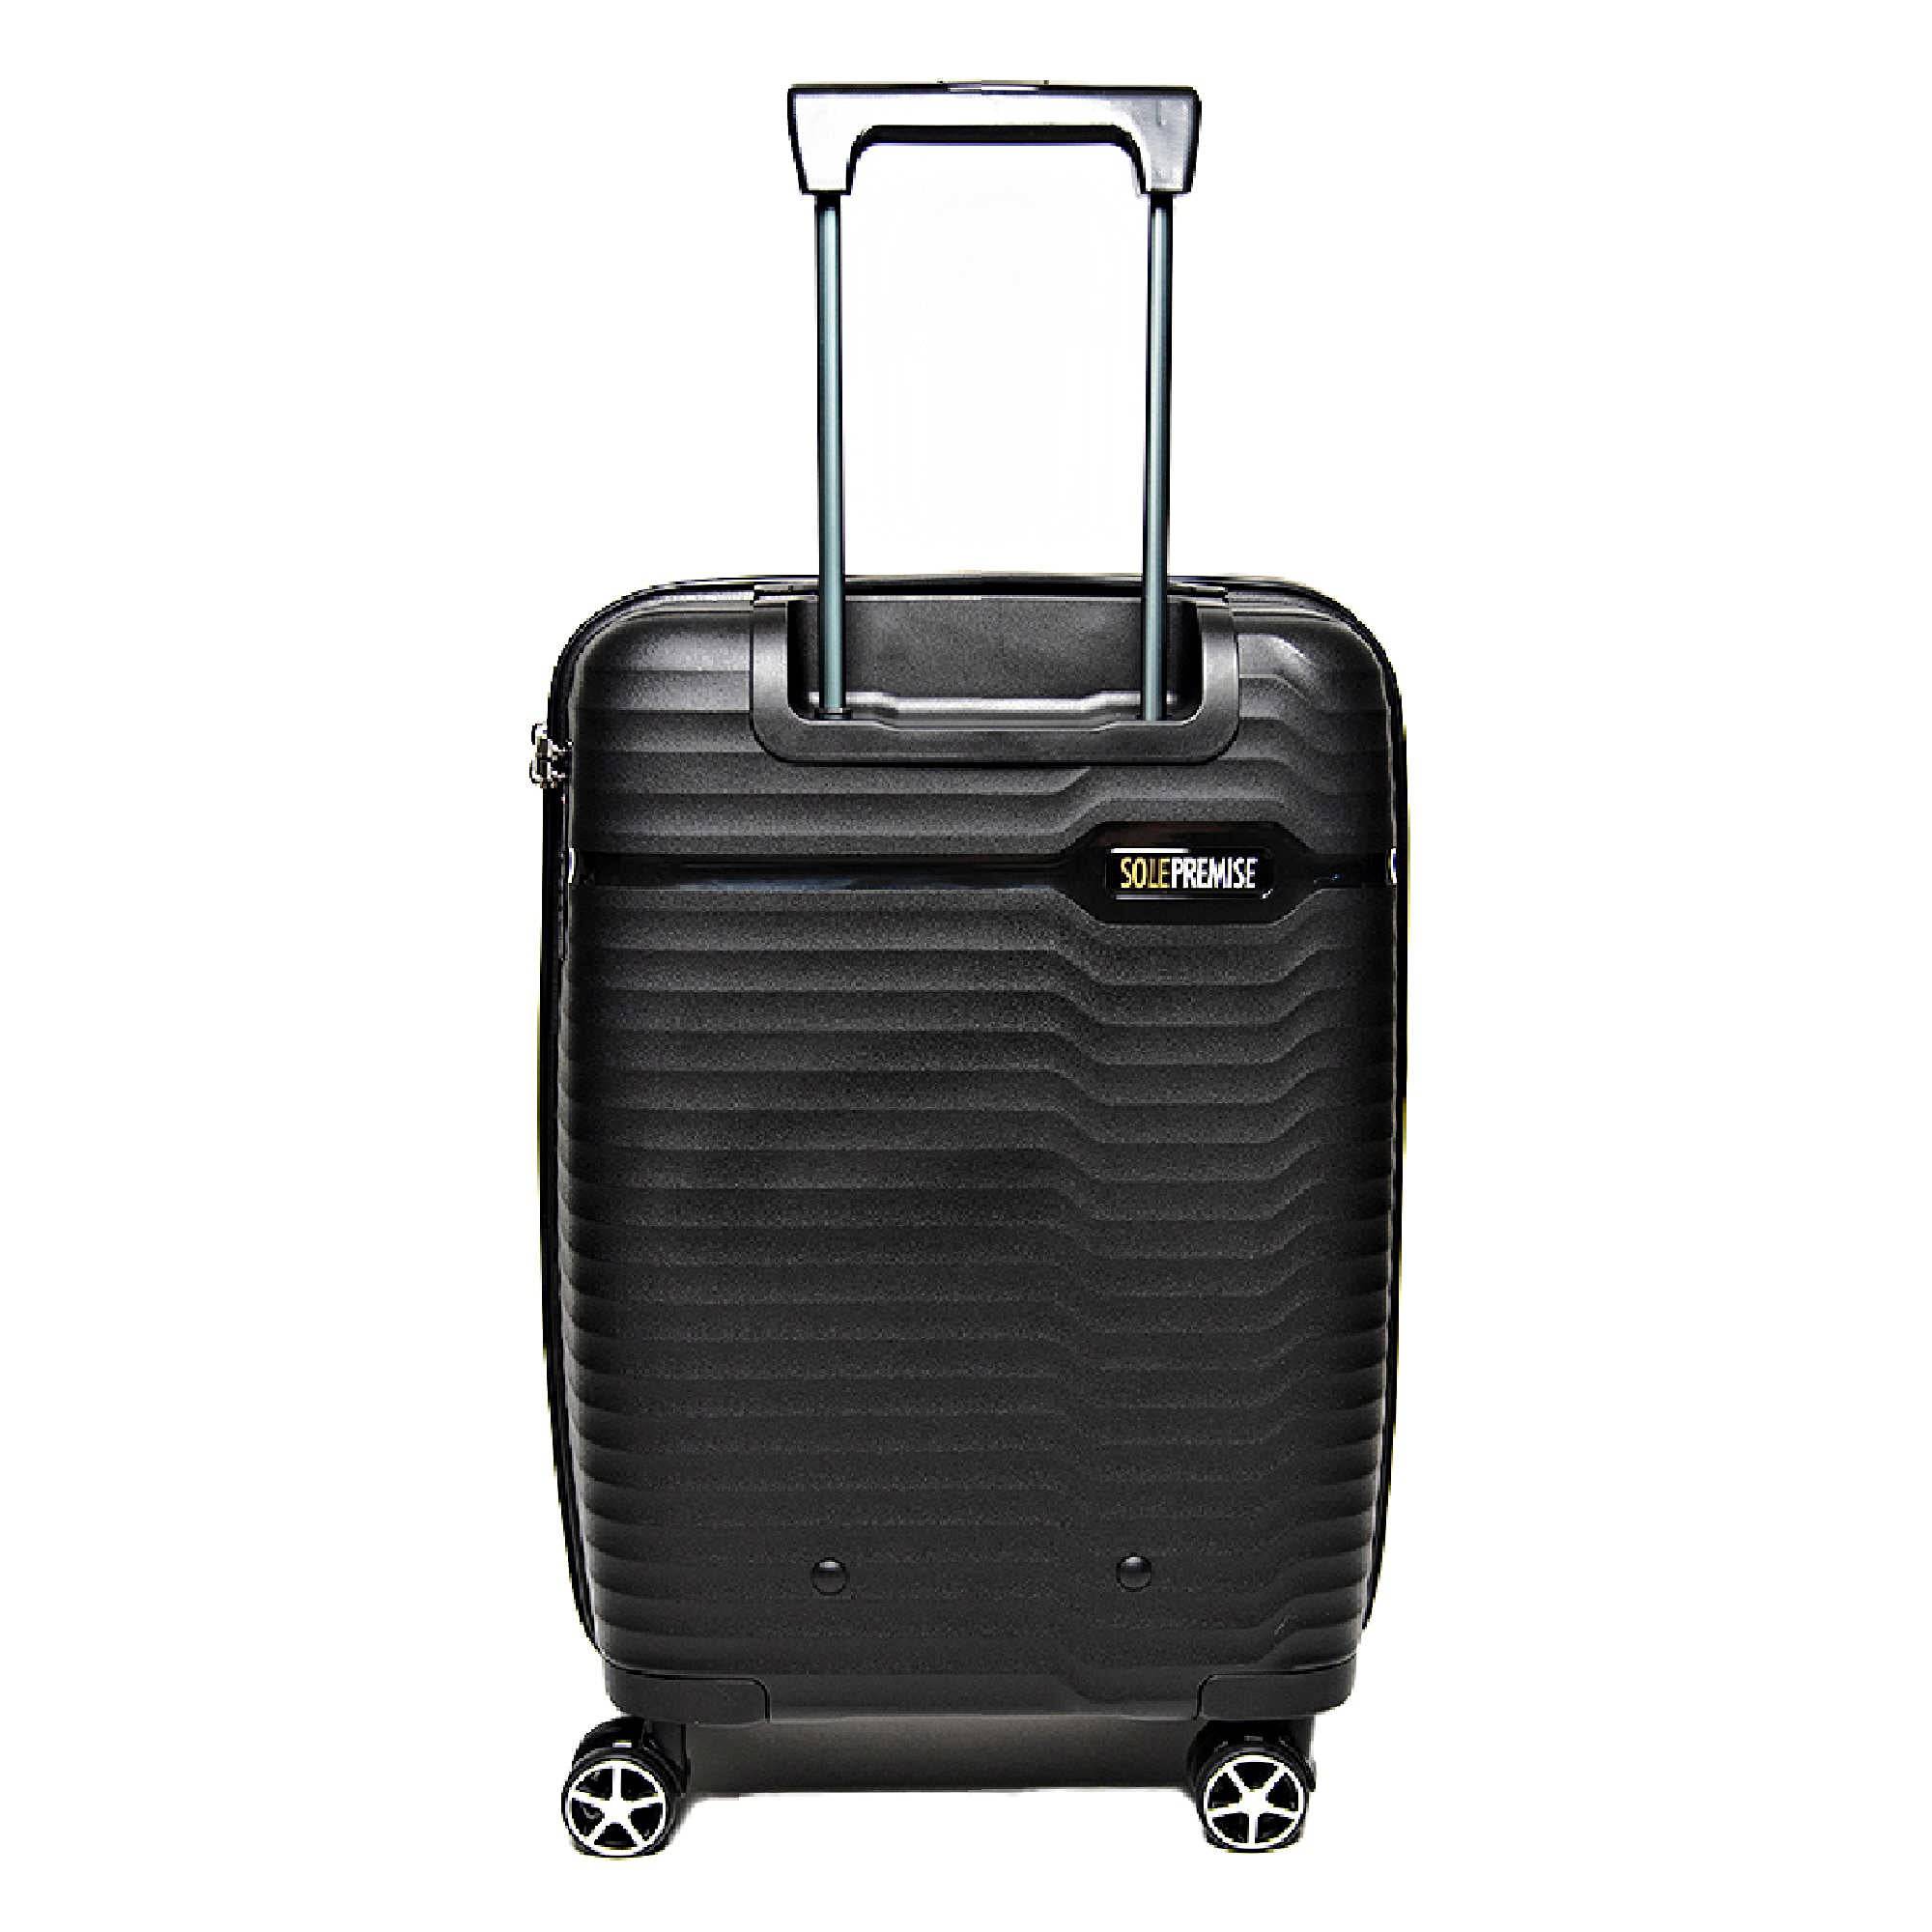 Assortment of 3 luggage Luggage – Lancaster US